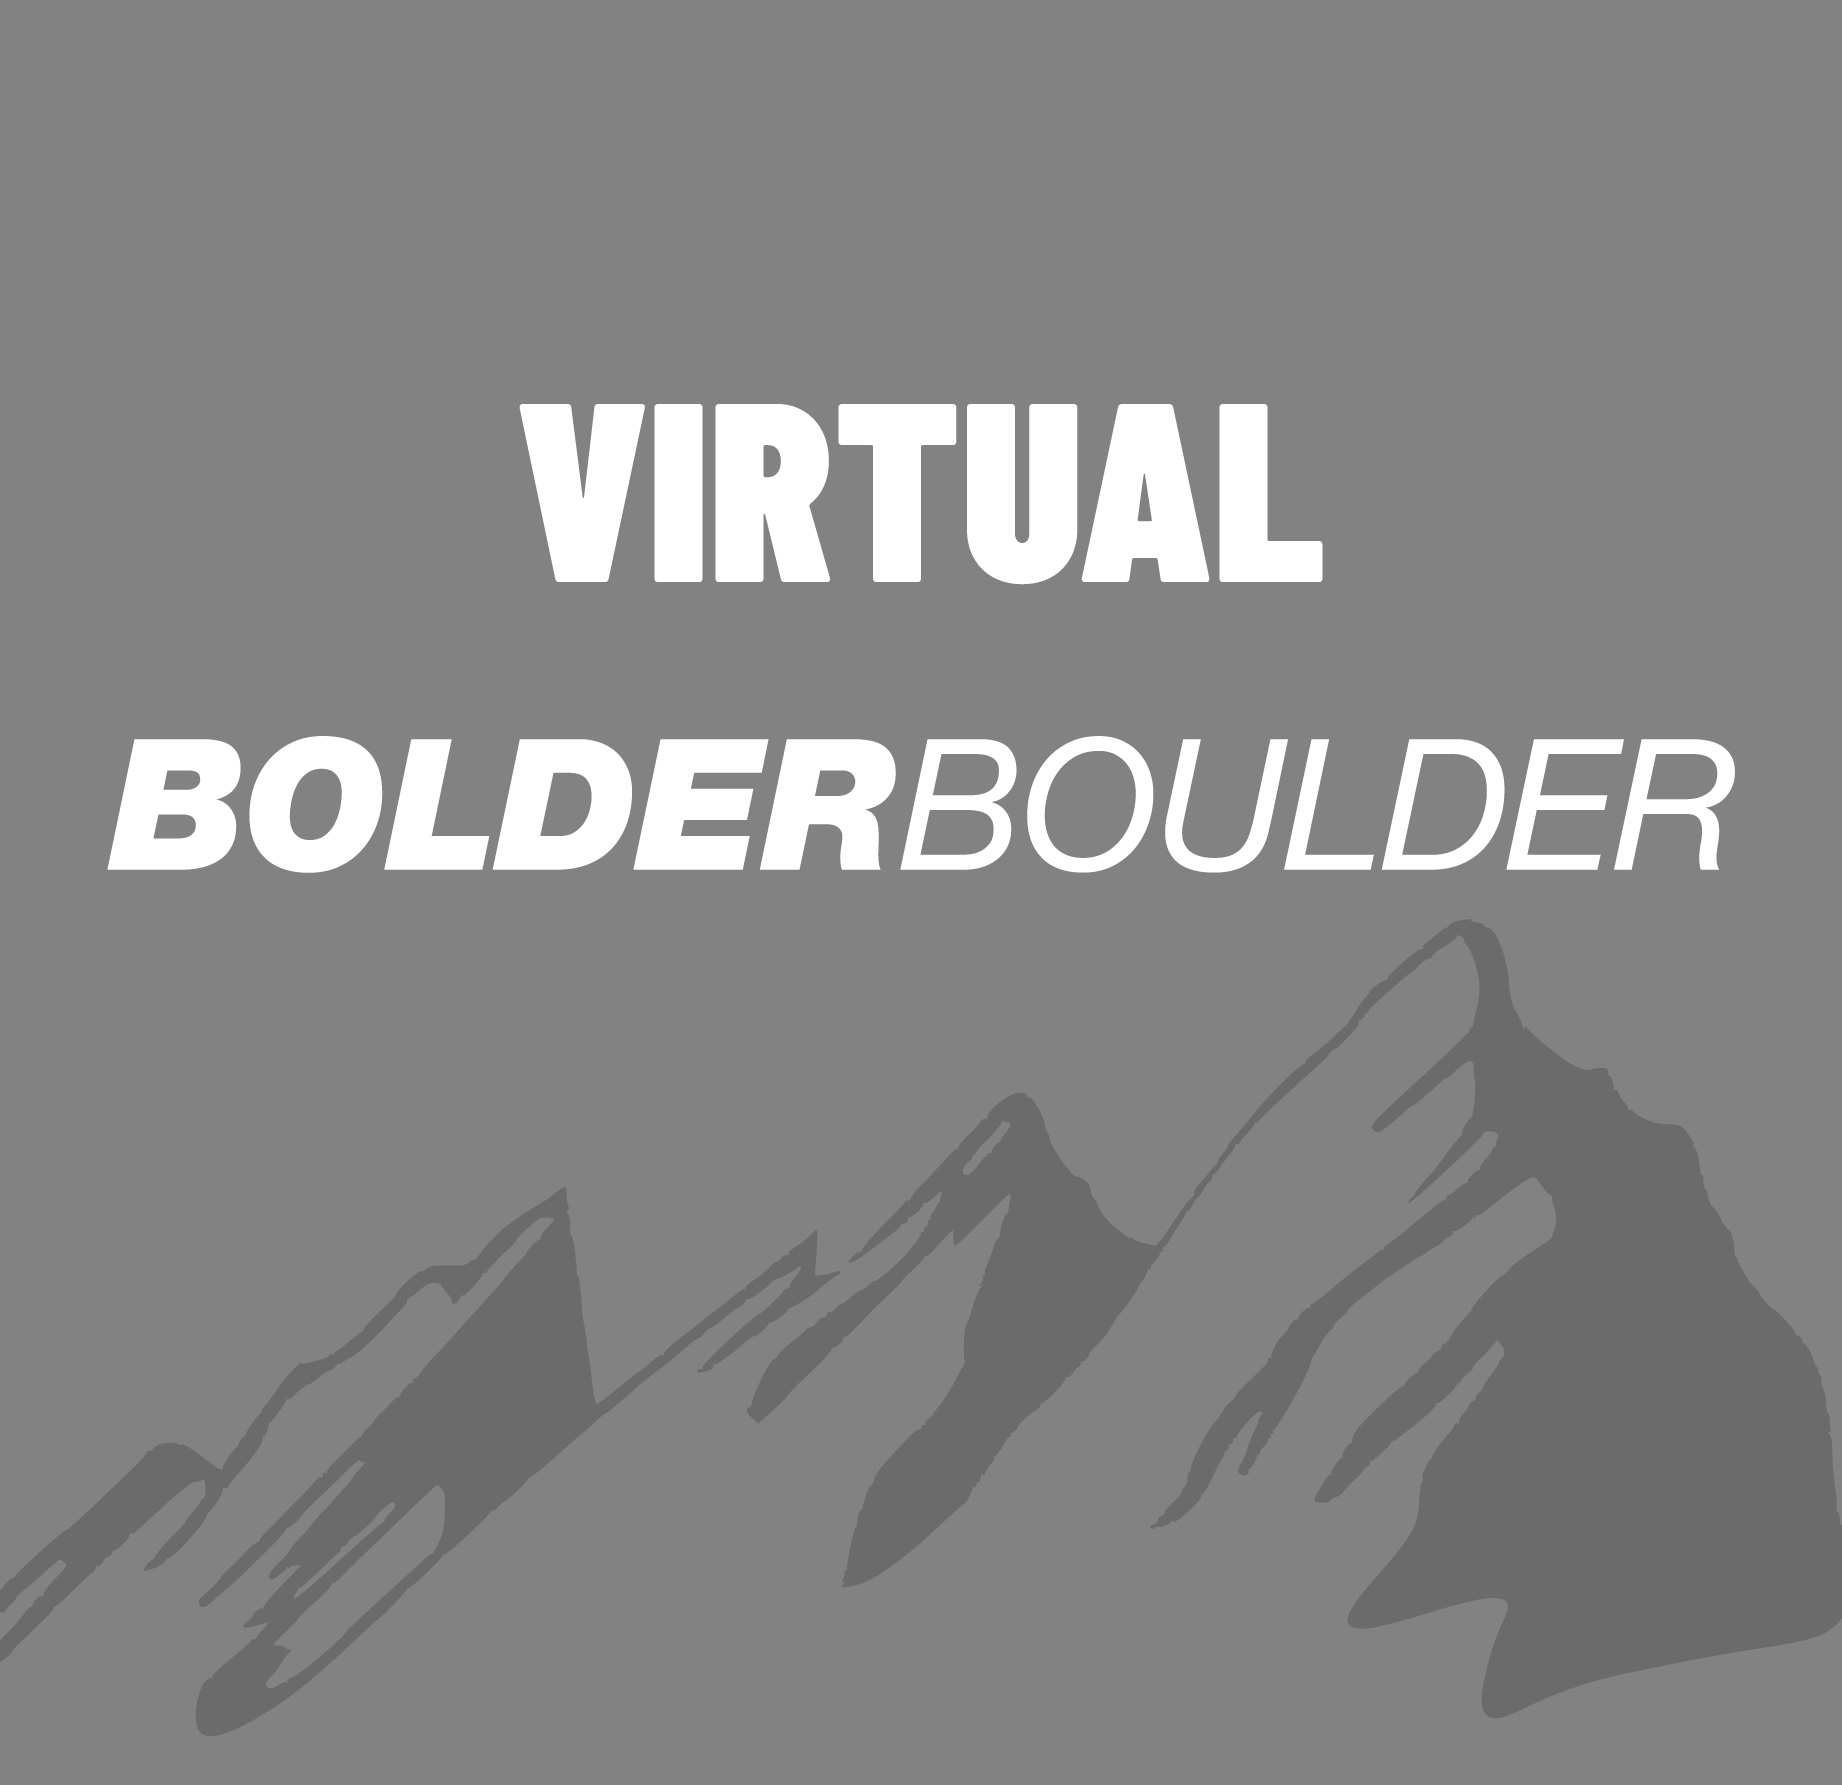 Virtual BolderBoulder